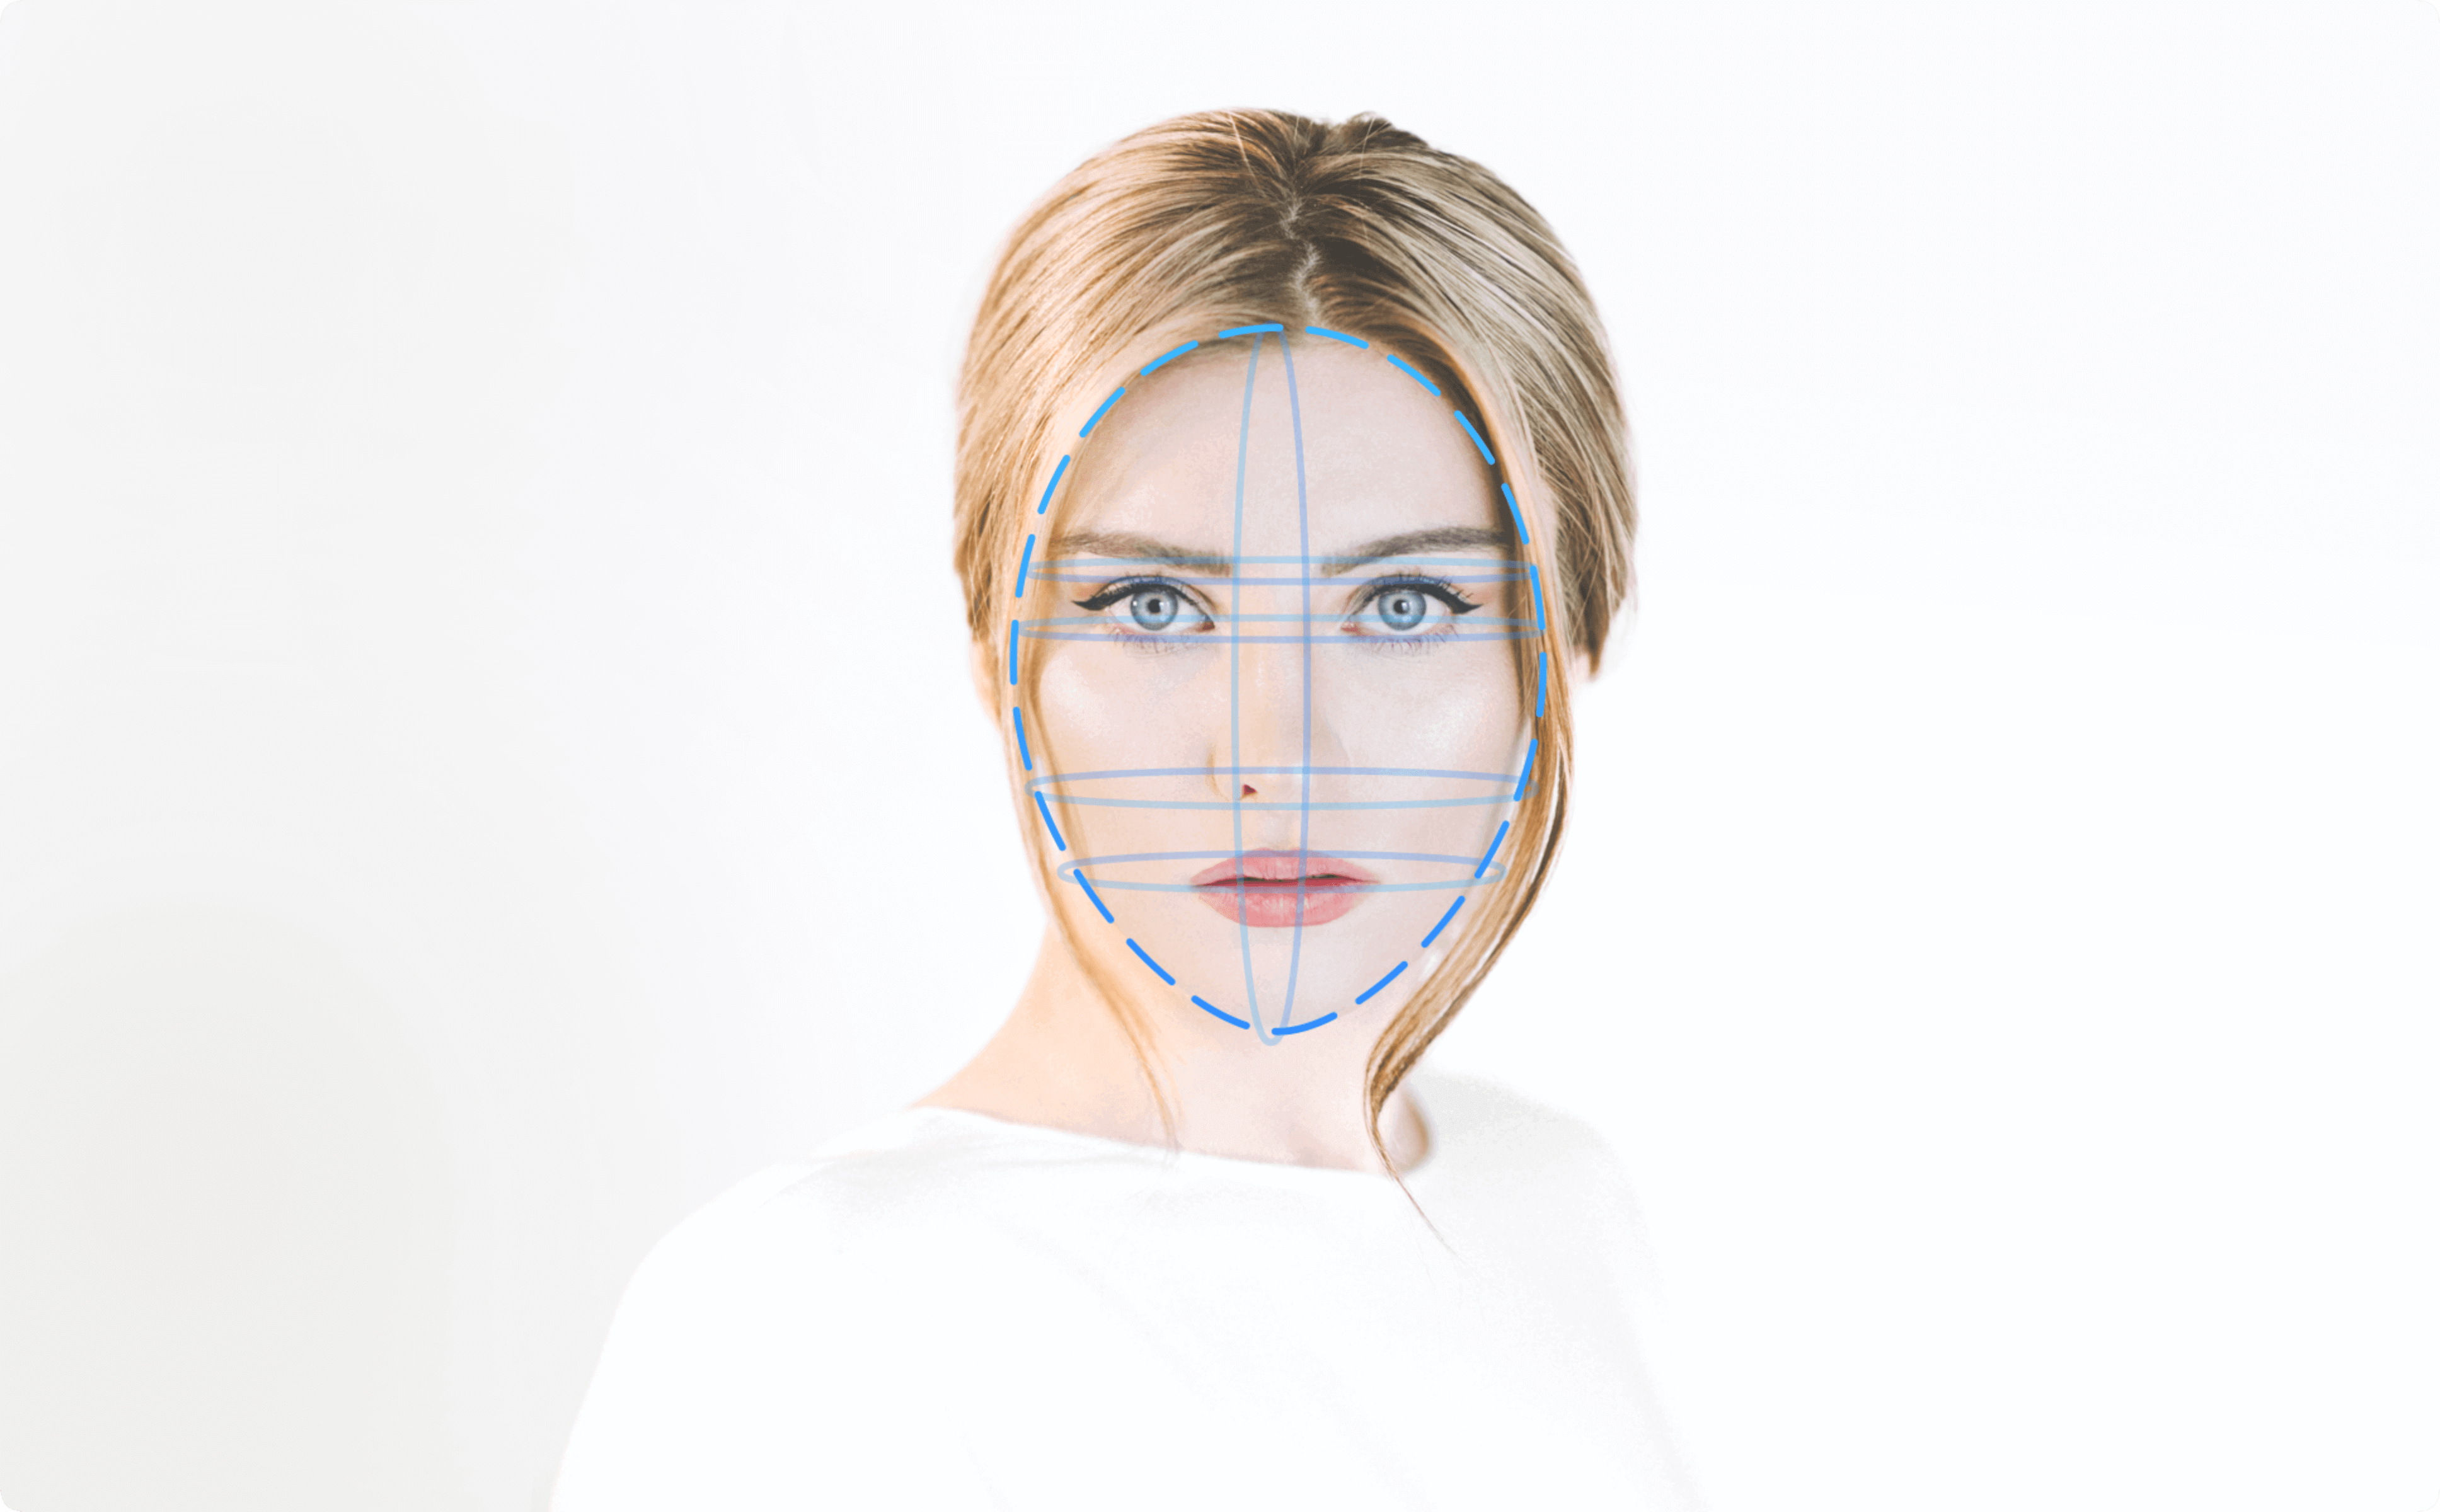 ช่องทาง facial liveness detection API ที่น่าเชื่อถือ，โดยการใช้ anti-spoofing และ time attendance